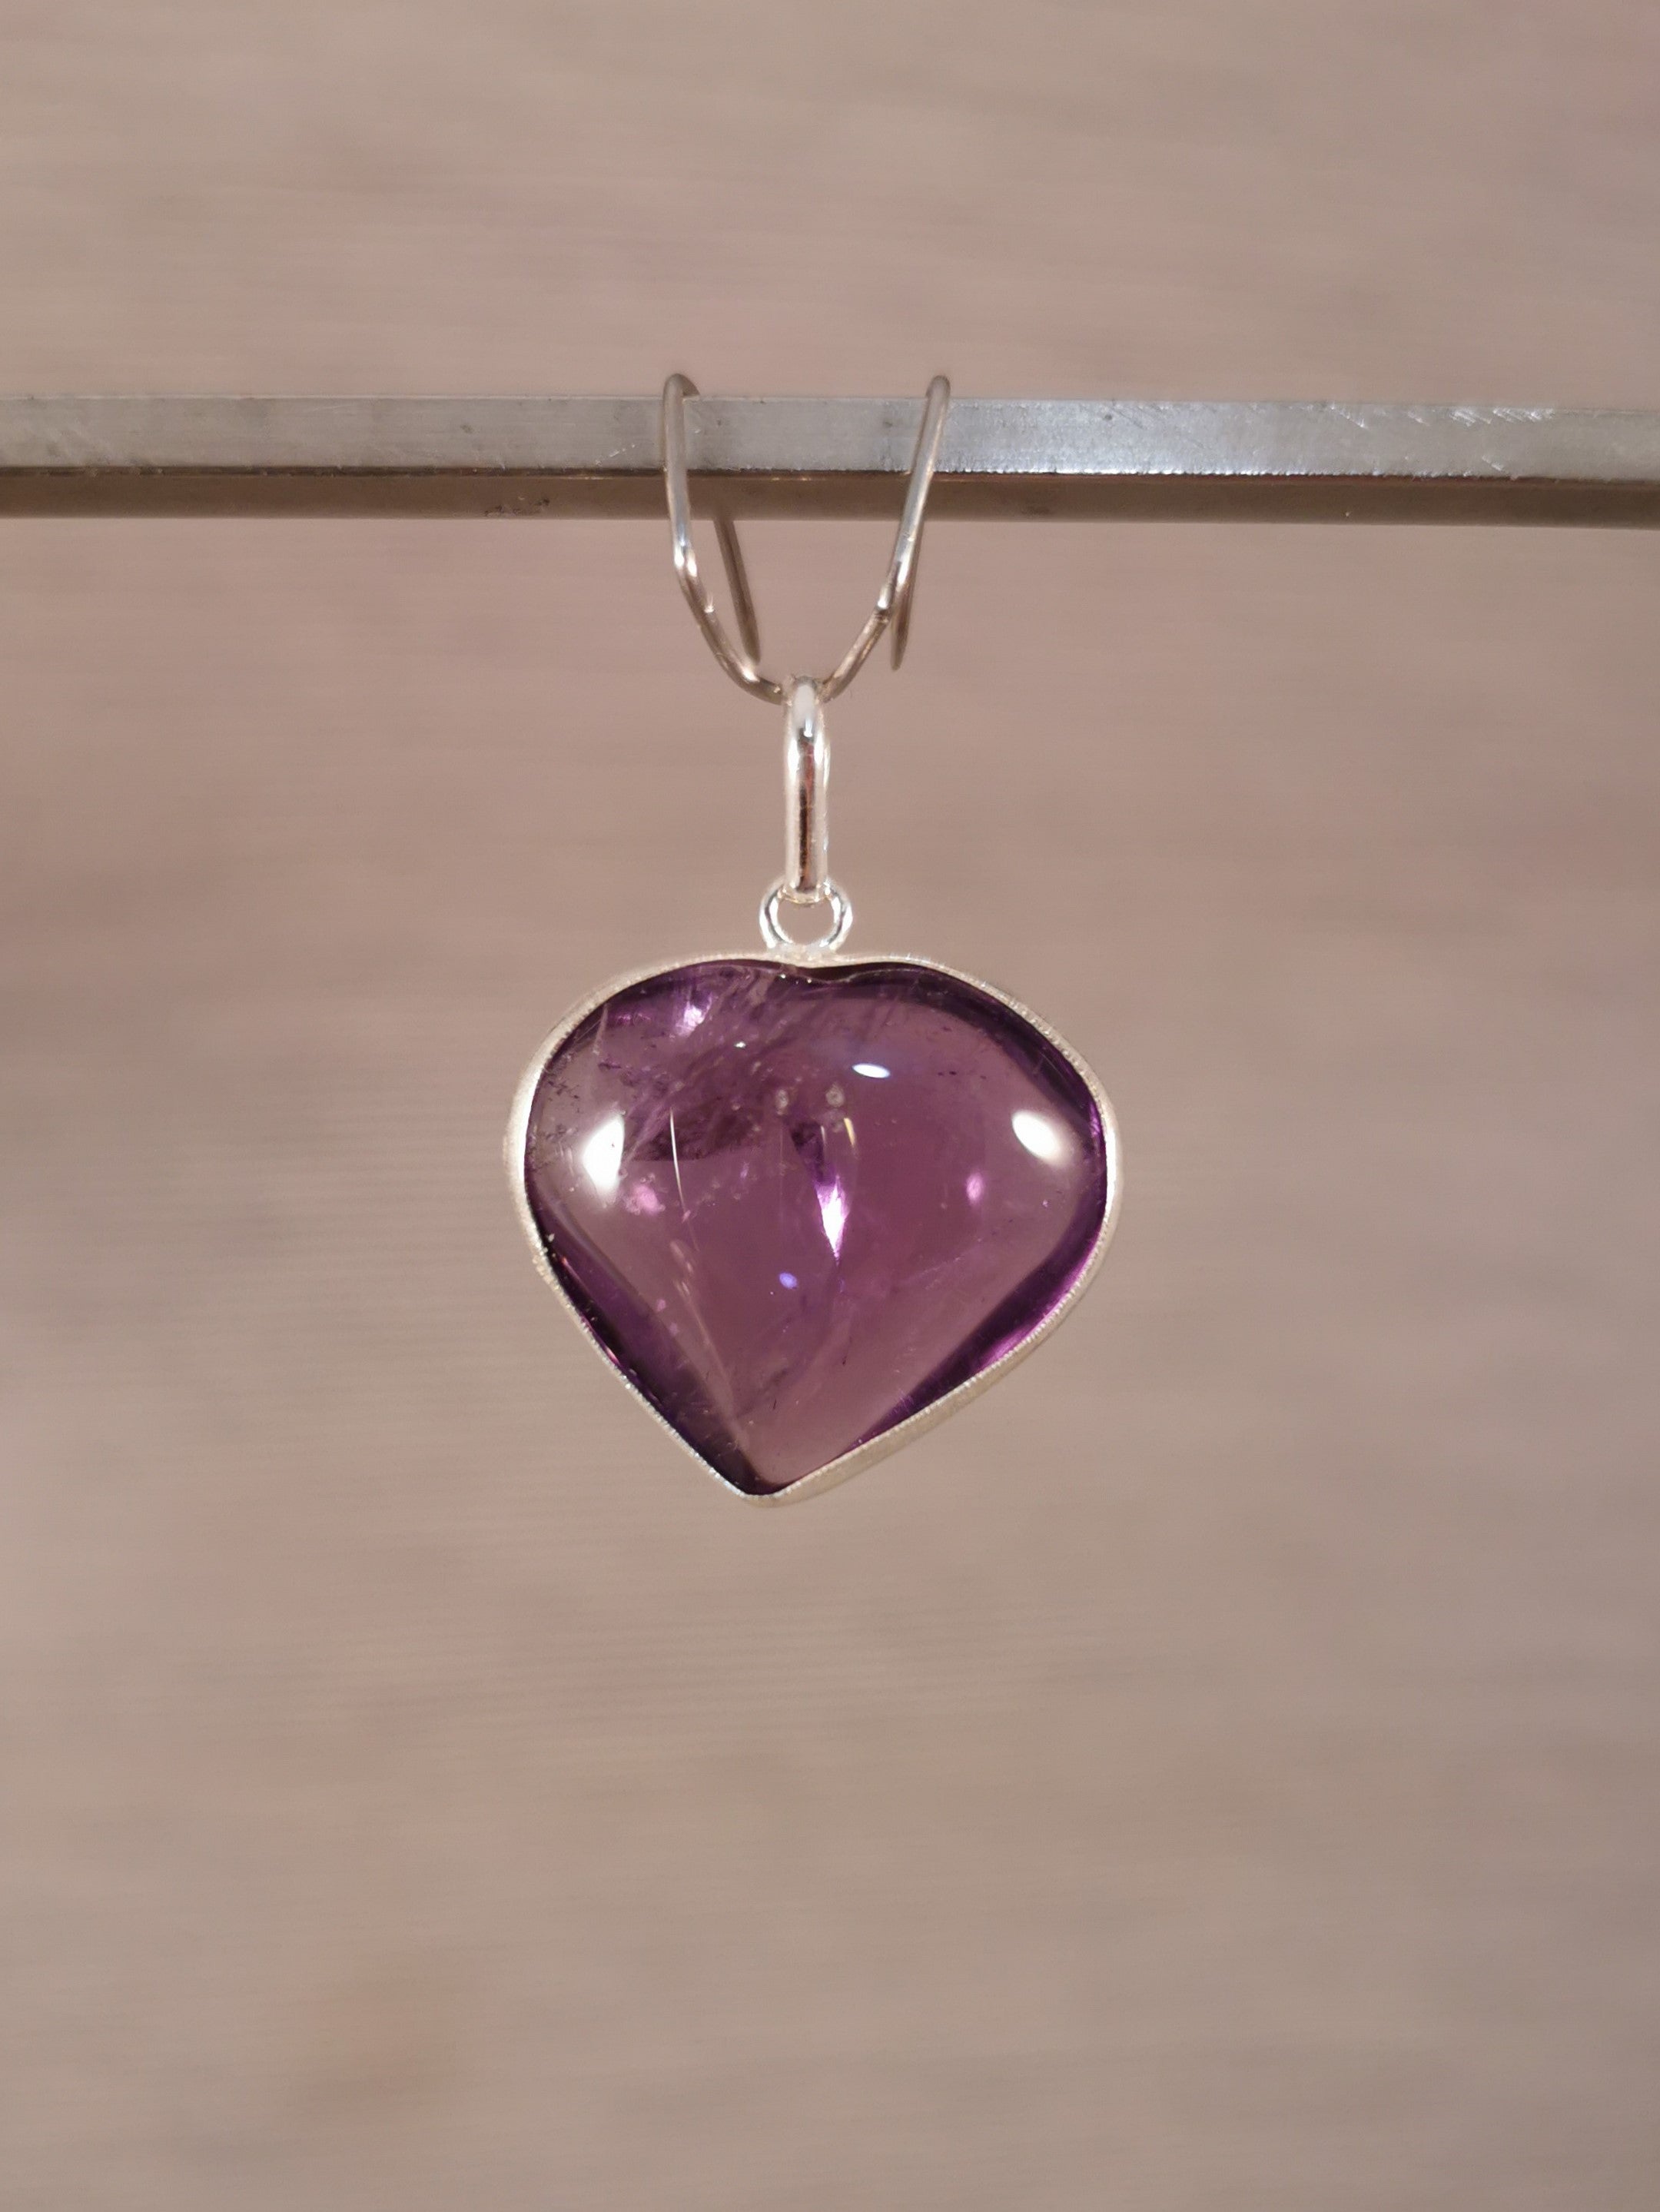 Amethyst Heart Pendant - 925 Sterling Silver